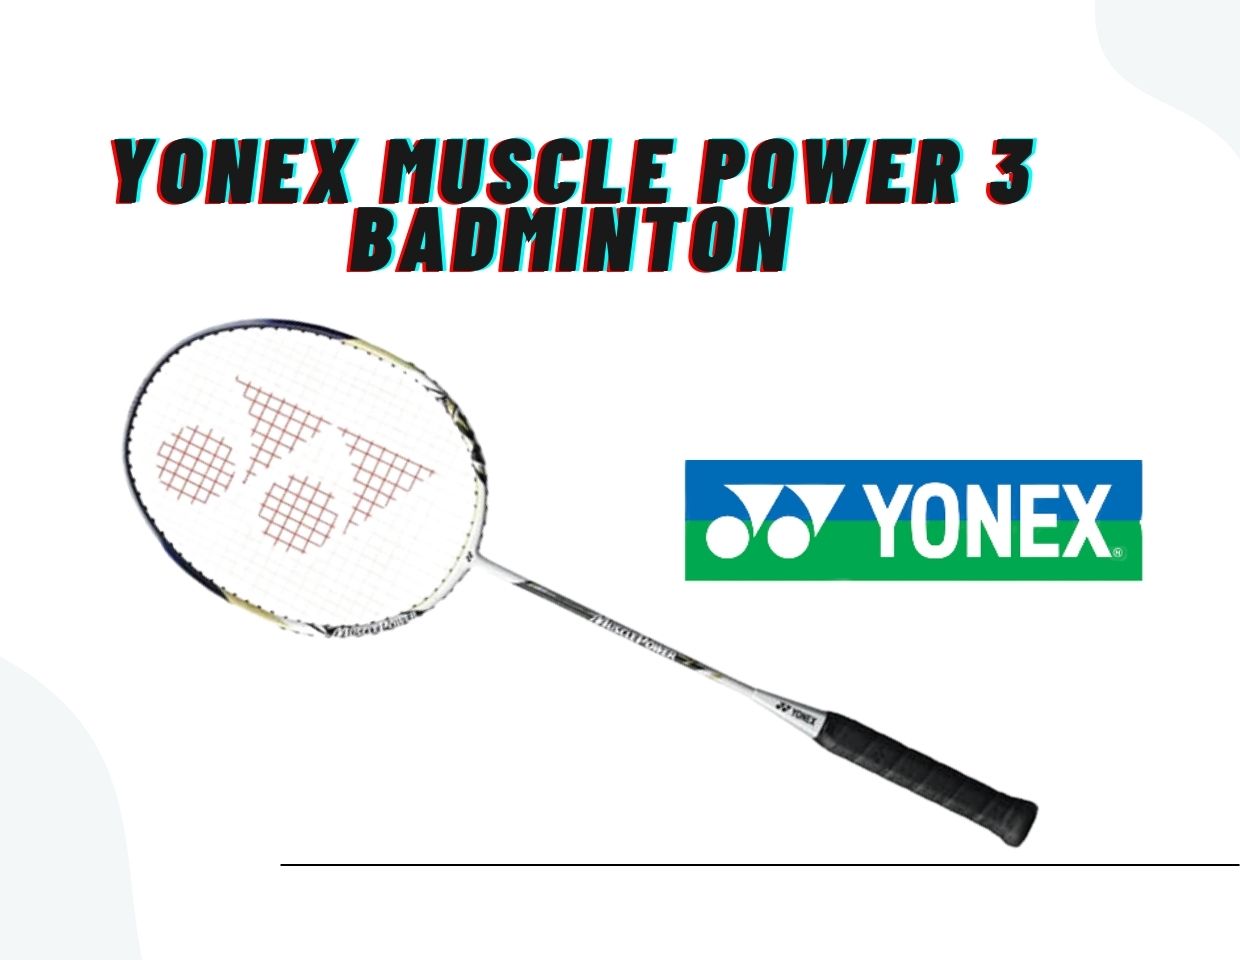 Yonex muscle power 3 badminton